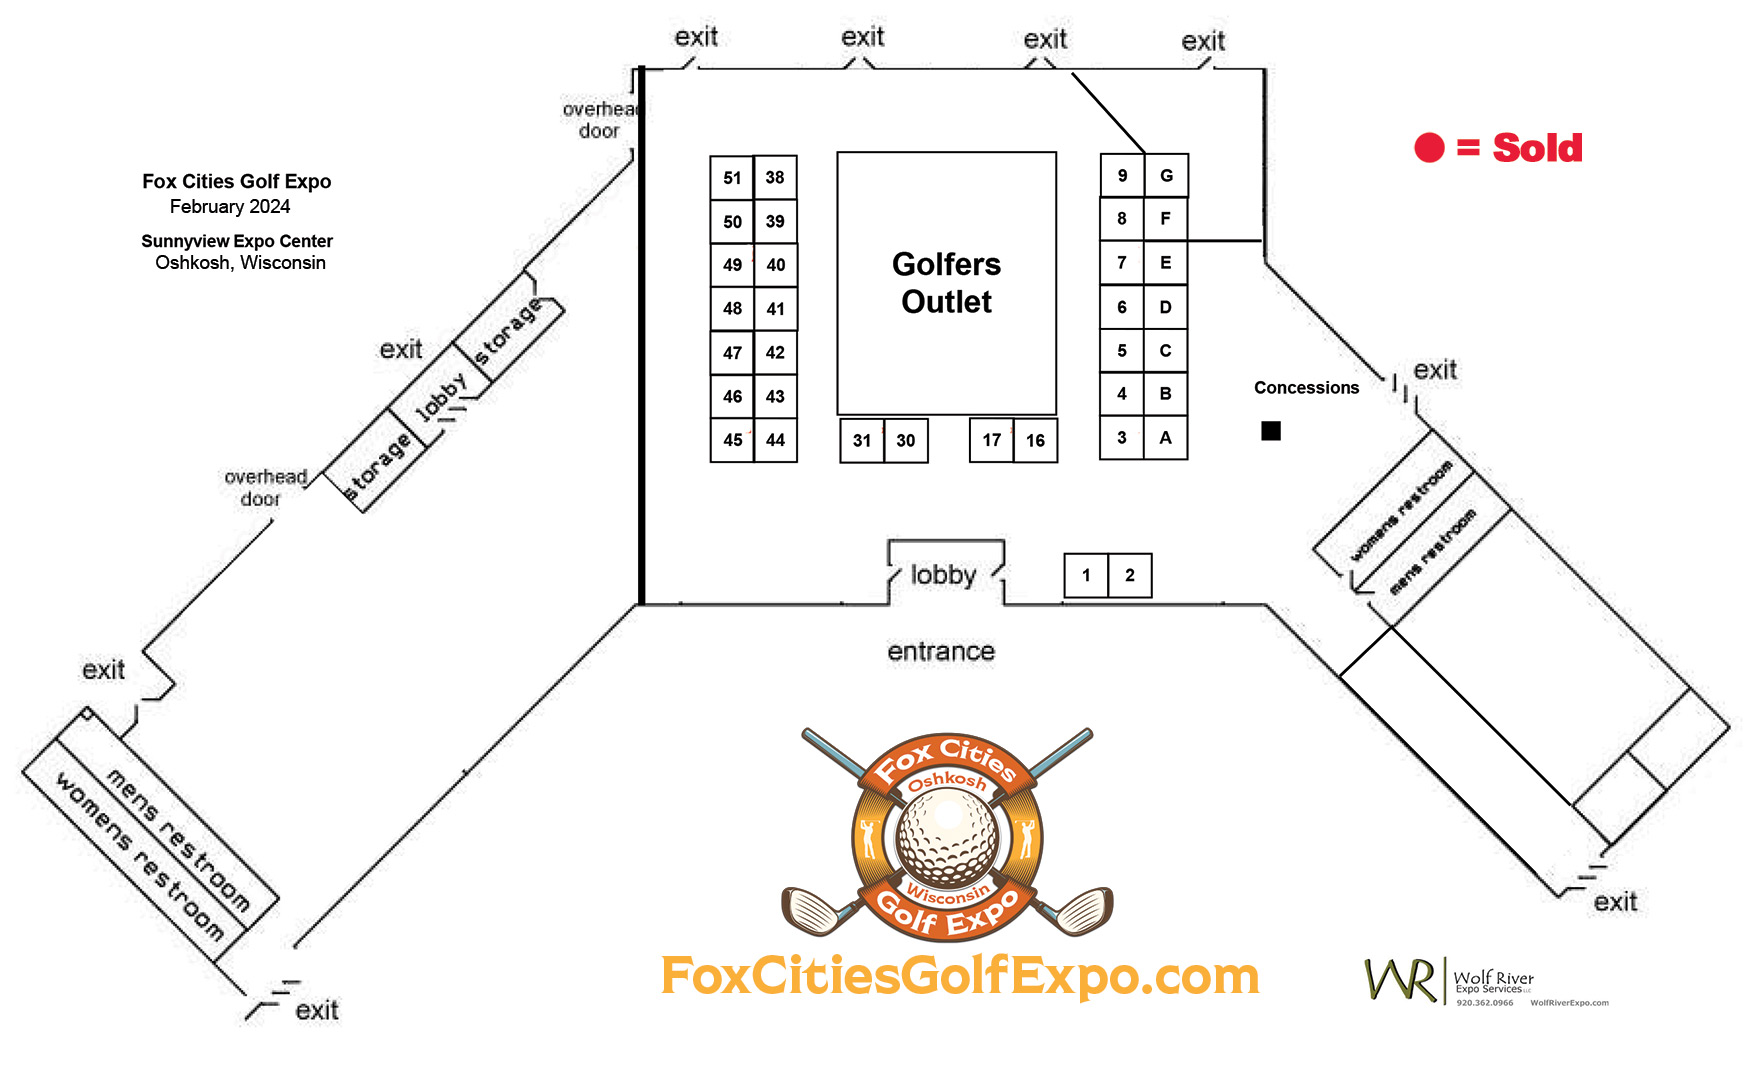 Exhibitor Info • Fox Cities Golf Expo Sunny View Expo Hall • Oshkosh WI